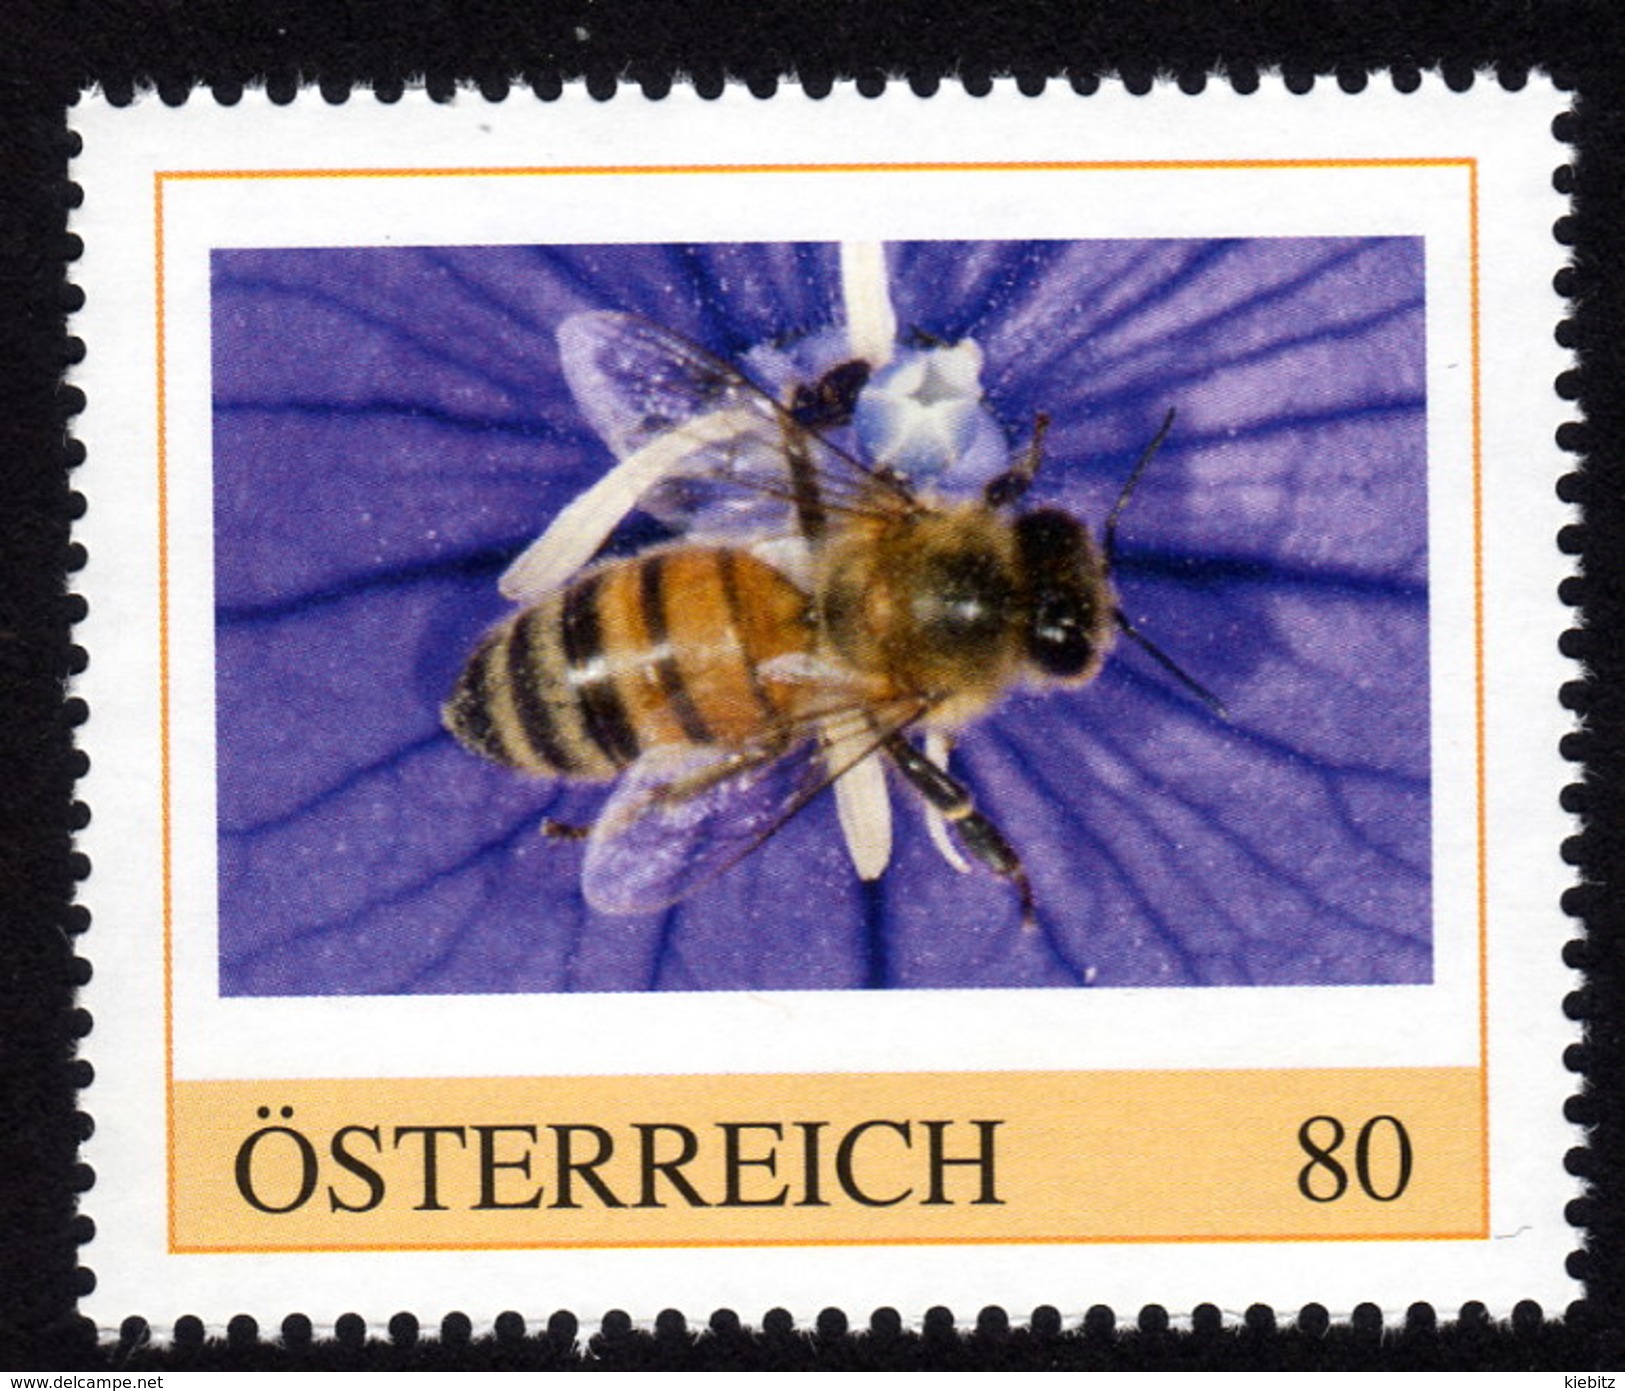 ÖSTERREICH 2015 ** Biene, Honigbiene, Honeybee - PM Personalized Stamp MNH - Bienen